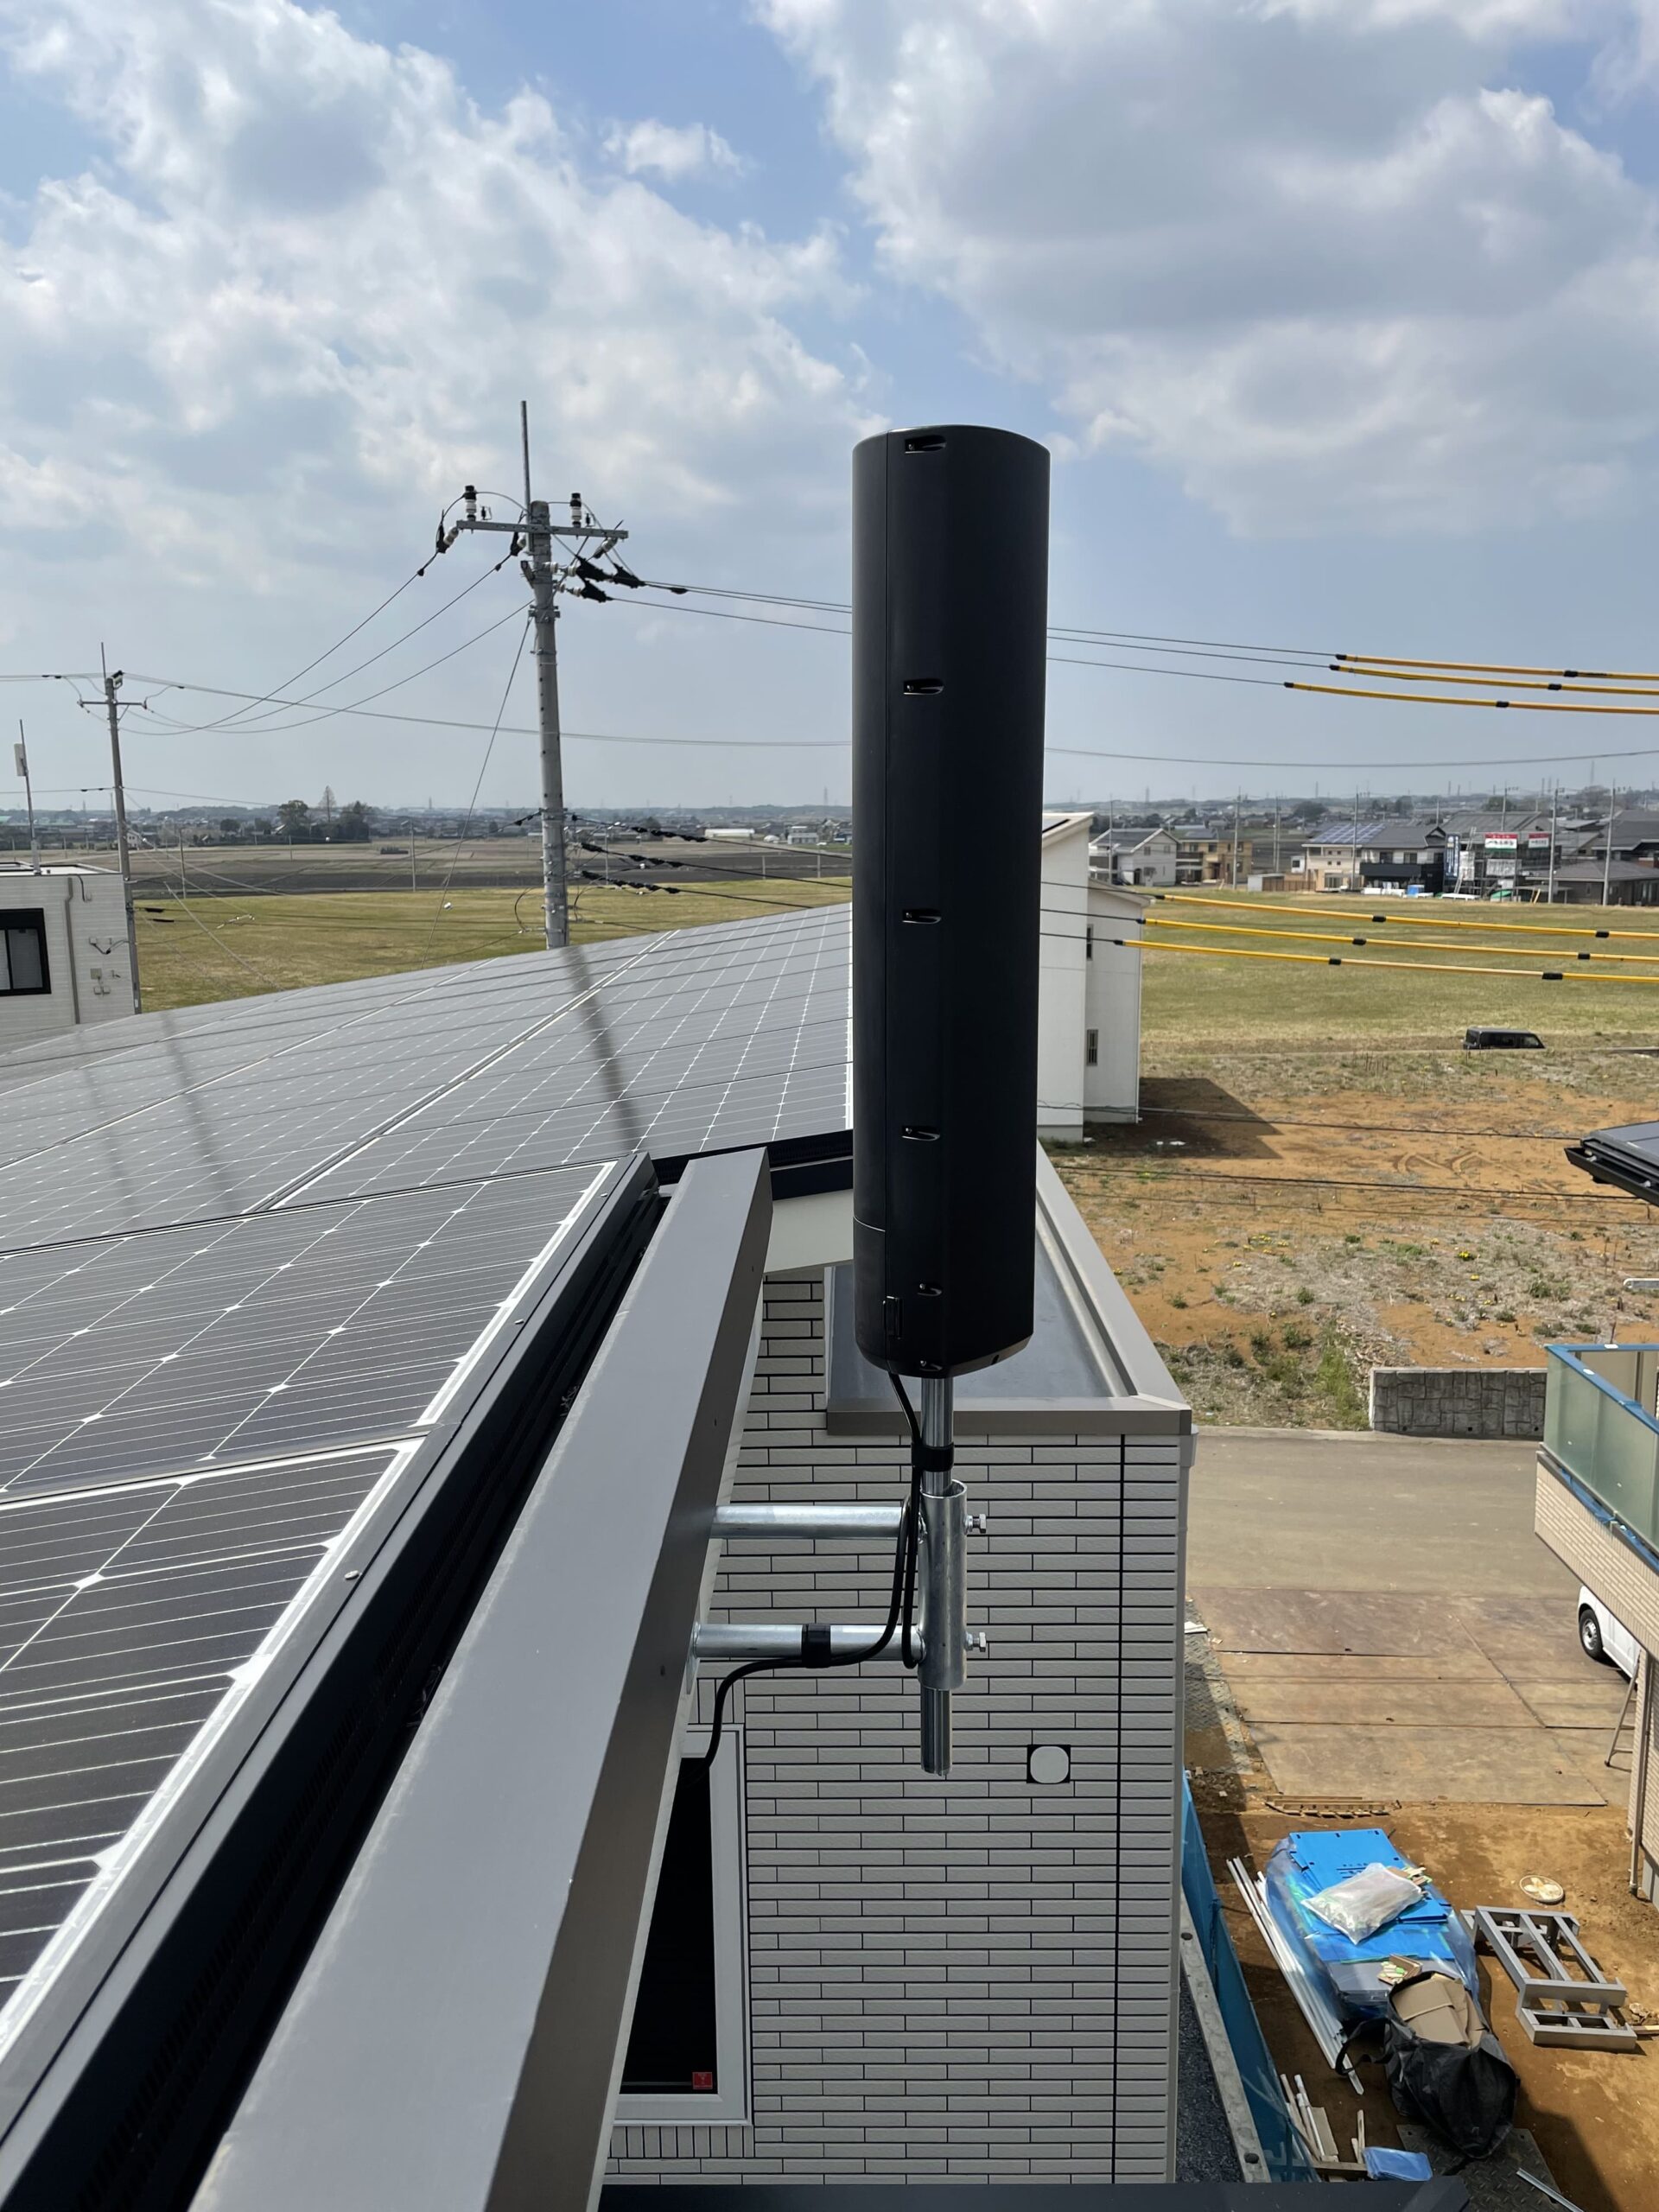 屋根に太陽光パネルあるなら破風板にアンテナ設置で視聴実現